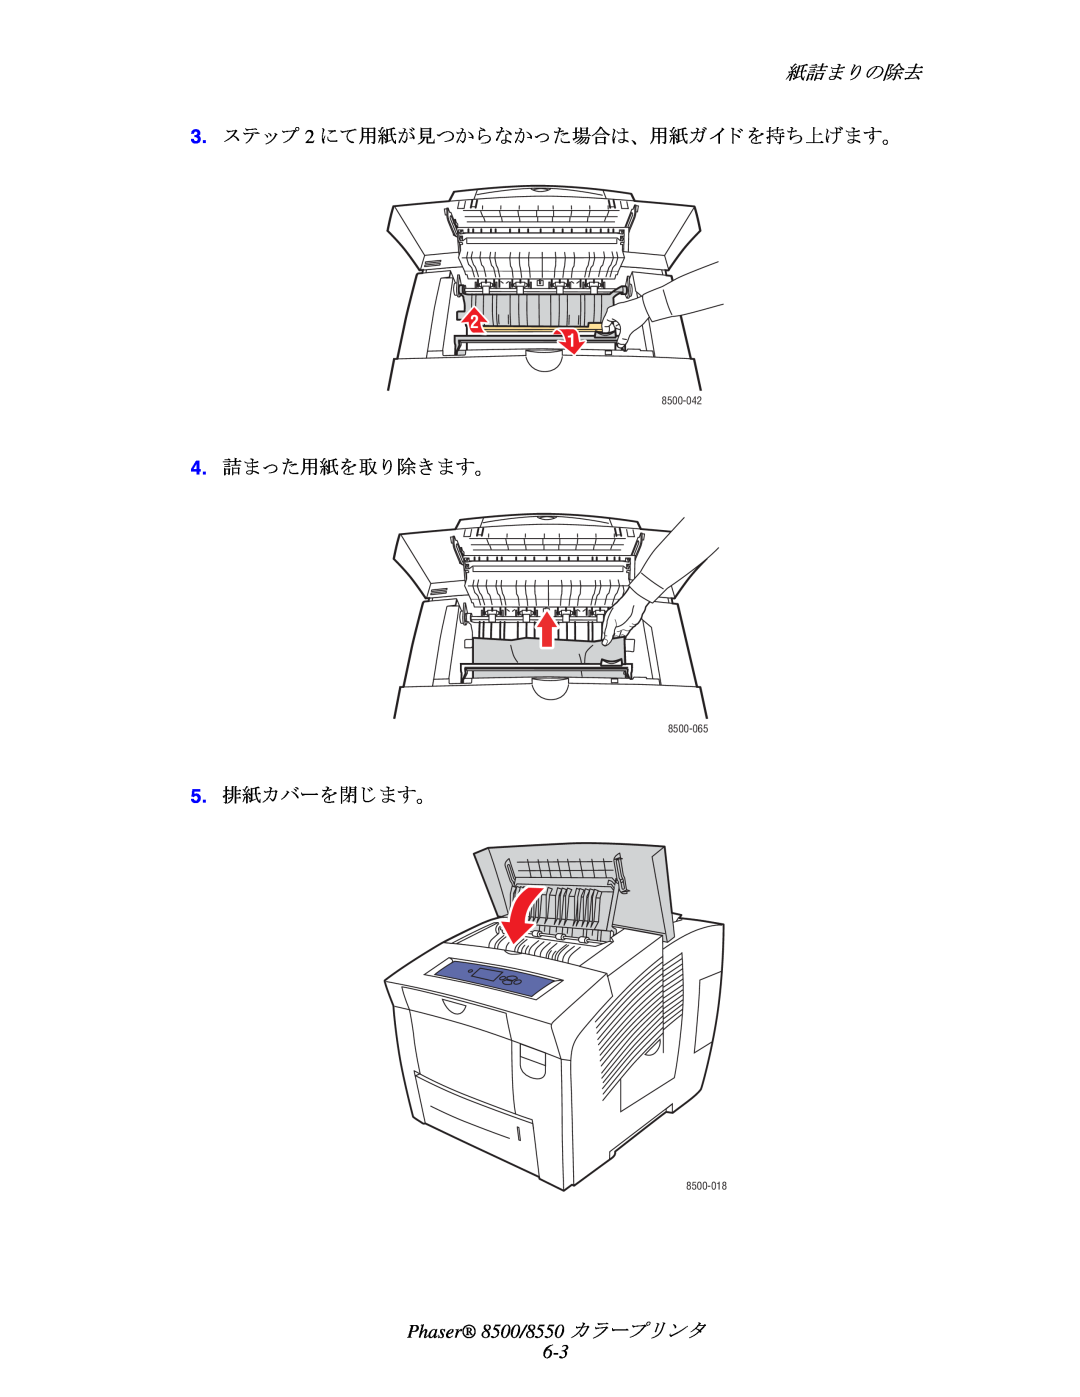 Xerox 紙詰ま り の除去, 3.ステ ップ 2 にて用紙が見つからなかった場合は、 用紙ガイ ド を持ち上げます。, 4.詰まった用紙を取 り 除き ます。, 5.排紙カバーを閉じ ます。, 8500-042, 8500-065 